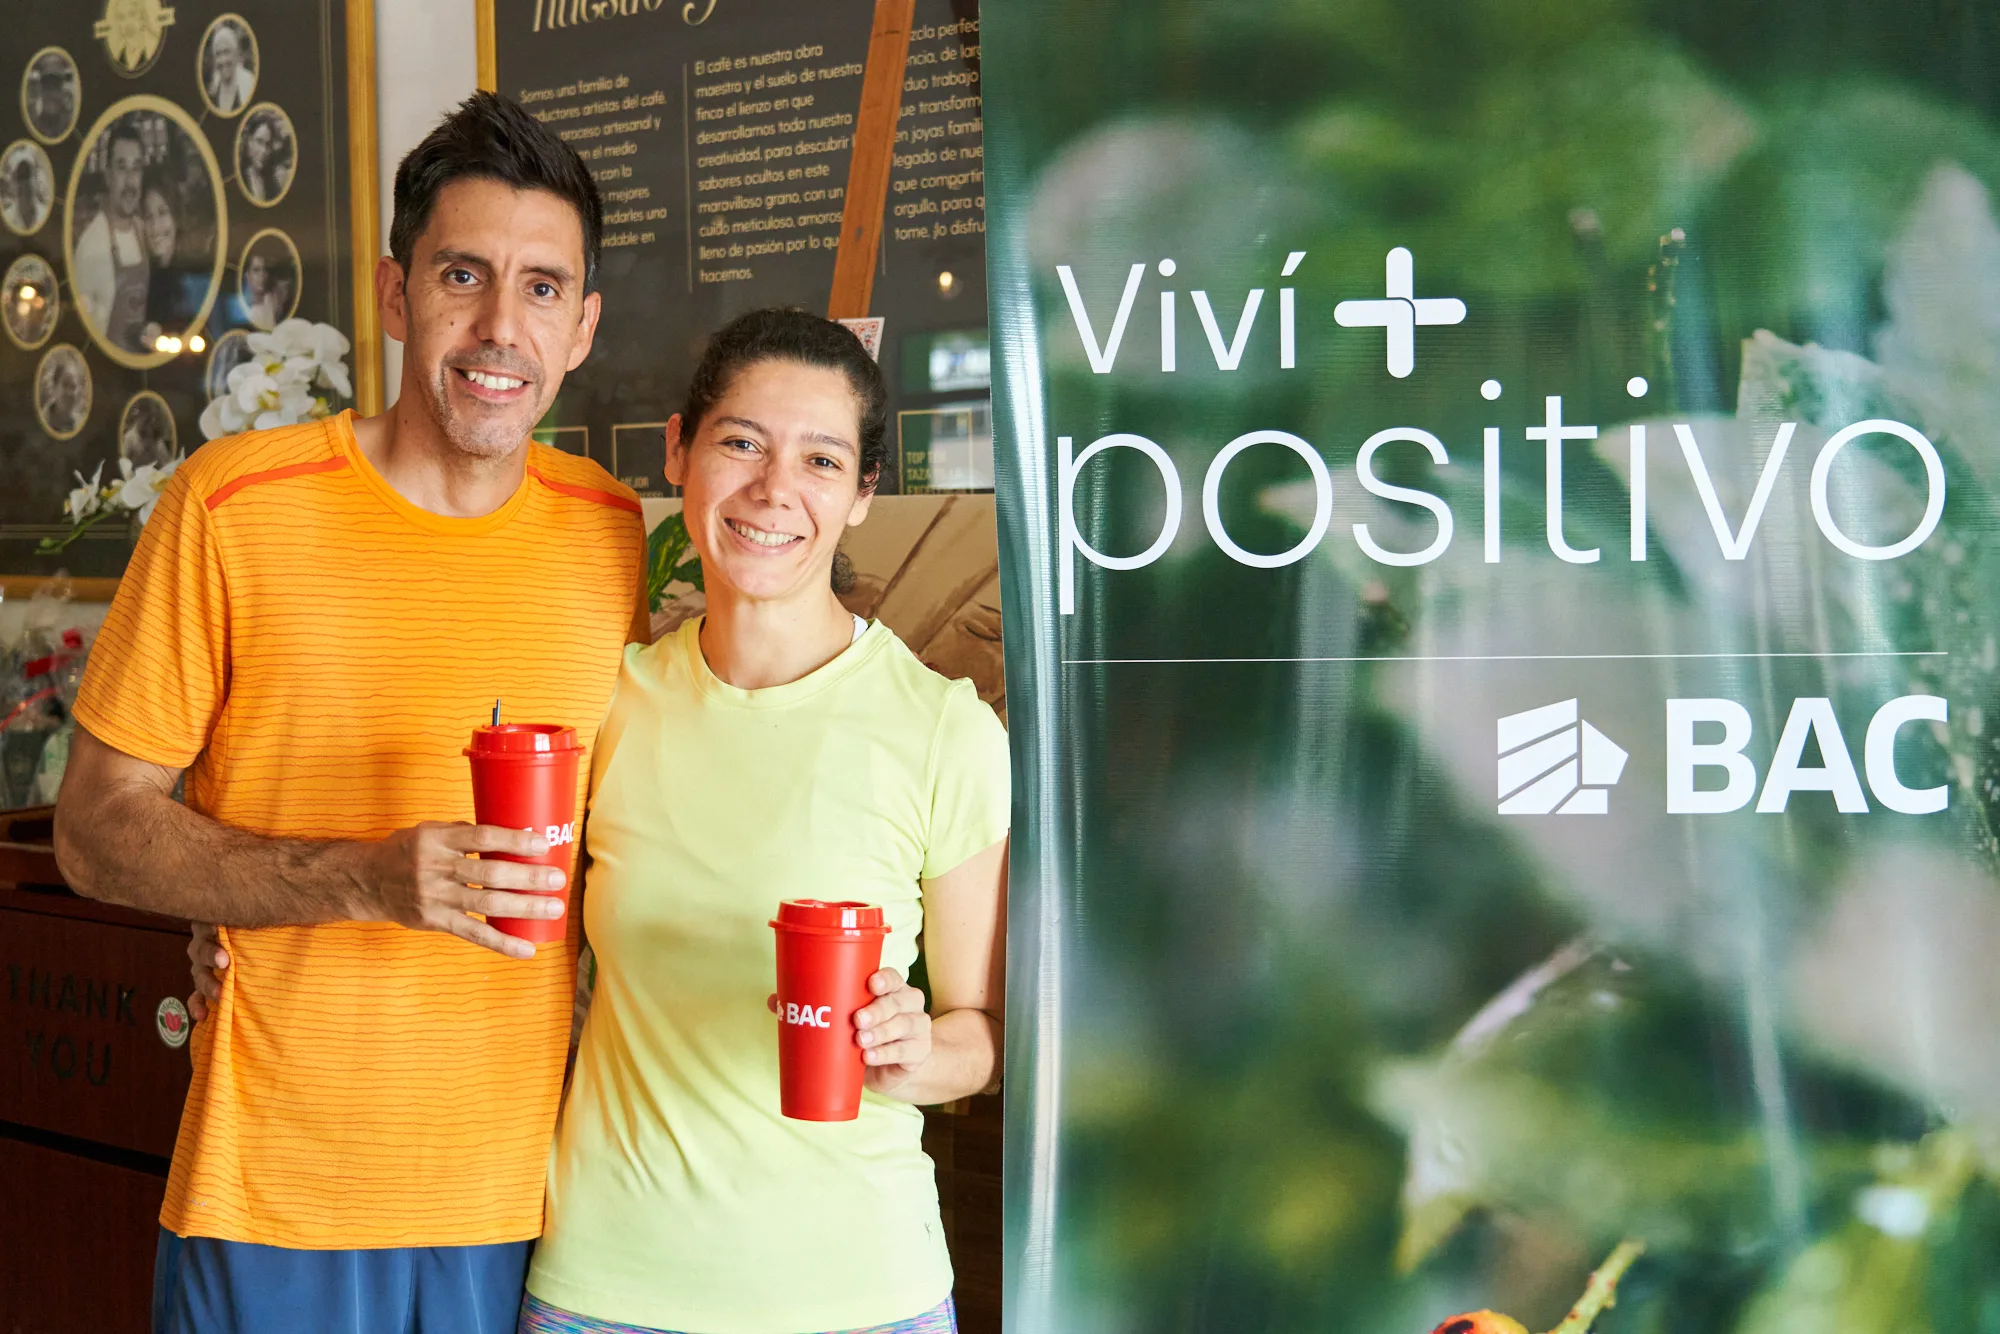 Viví +Positivo es la invitación de la campaña medioambiental de BAC Nicaragua